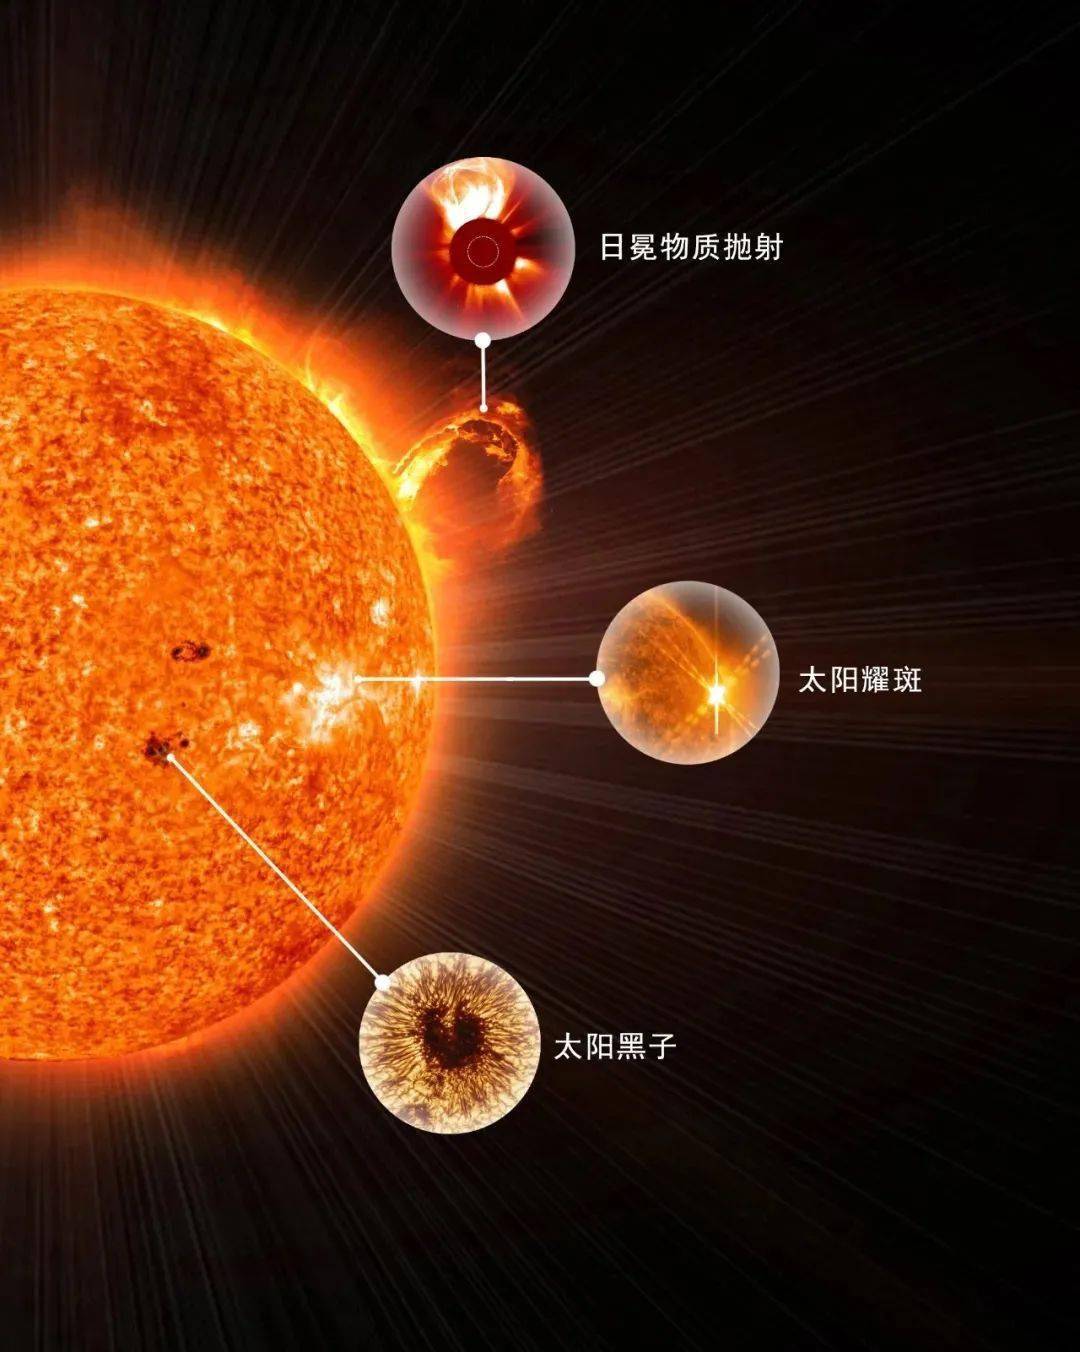 日冕物质抛射-esa&nasa/soho,太阳耀斑-sdo,太阳黑子-nso/aura/nsf.